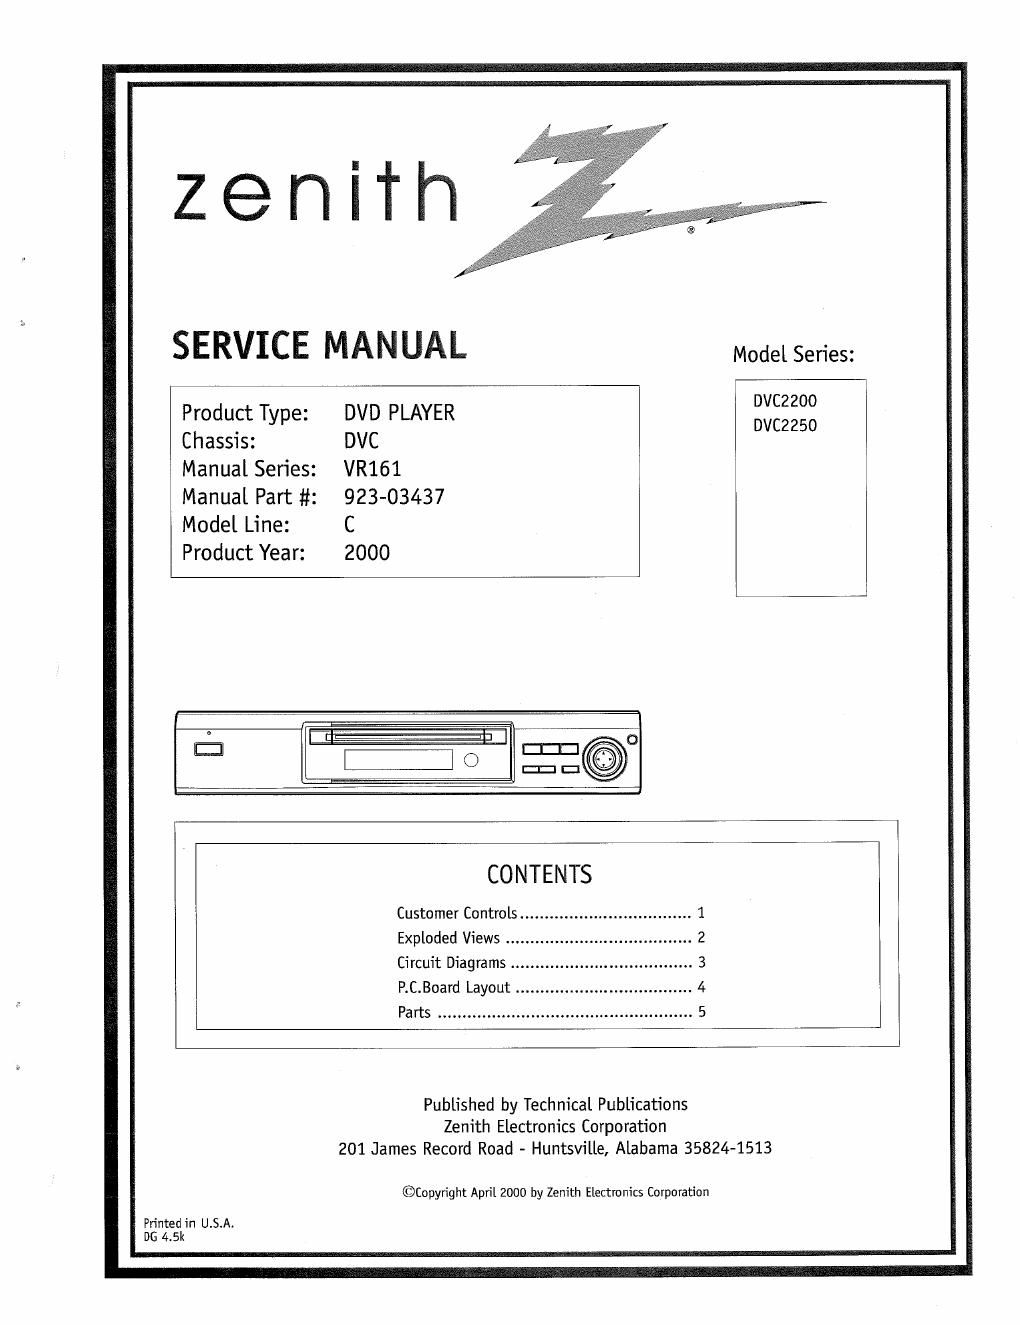 zenith dvc 2250 service manual